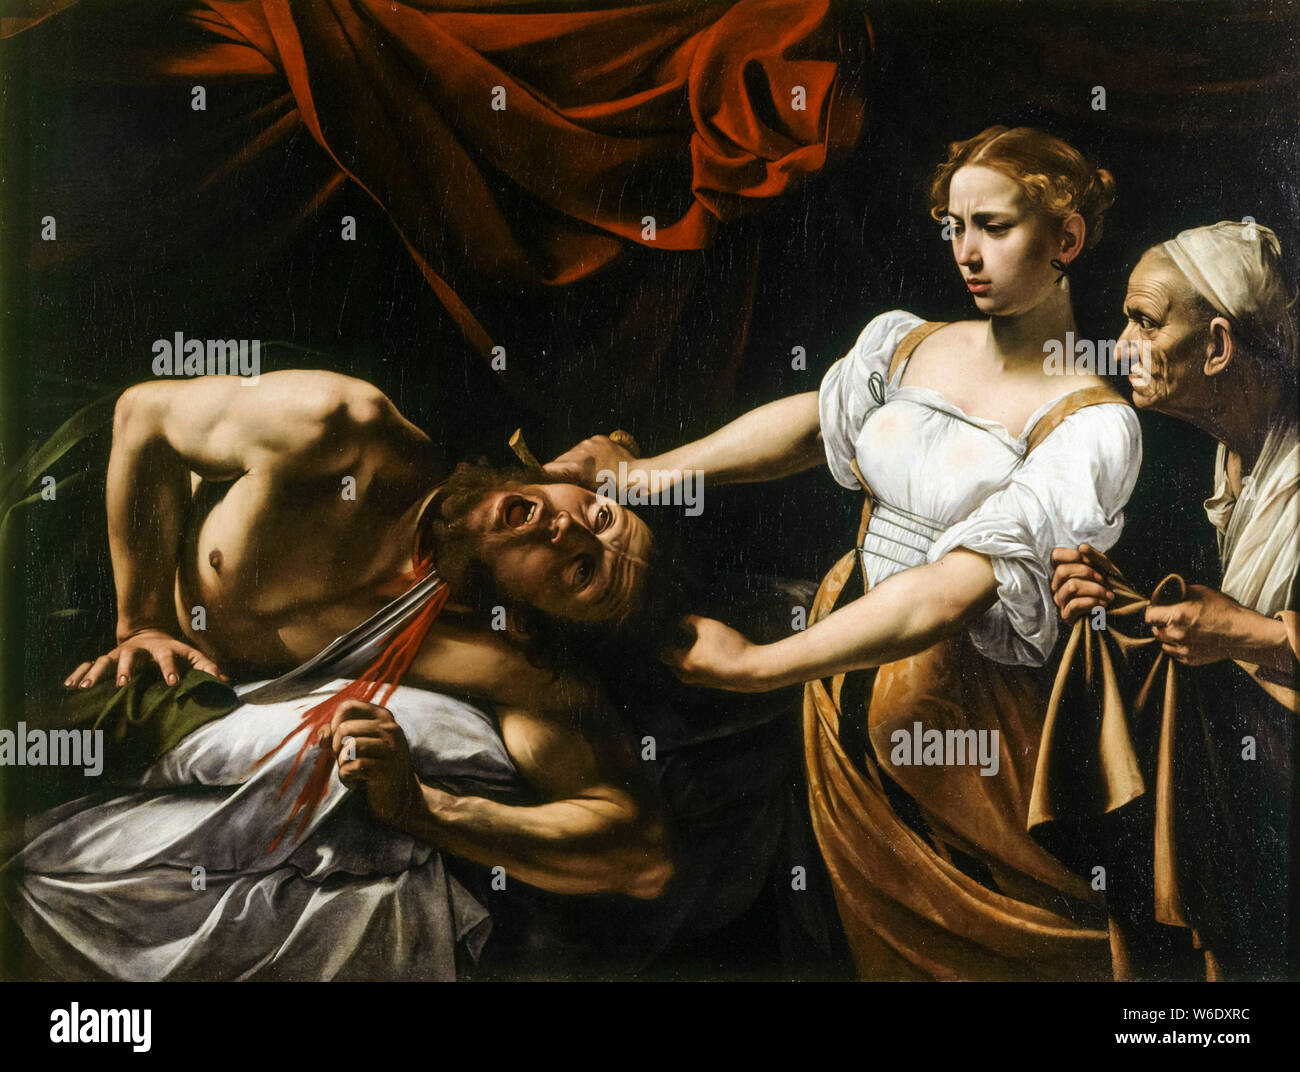 Caravaggio, pittura barocca, Judith Beheading Holofernes, circa 1599 Foto Stock